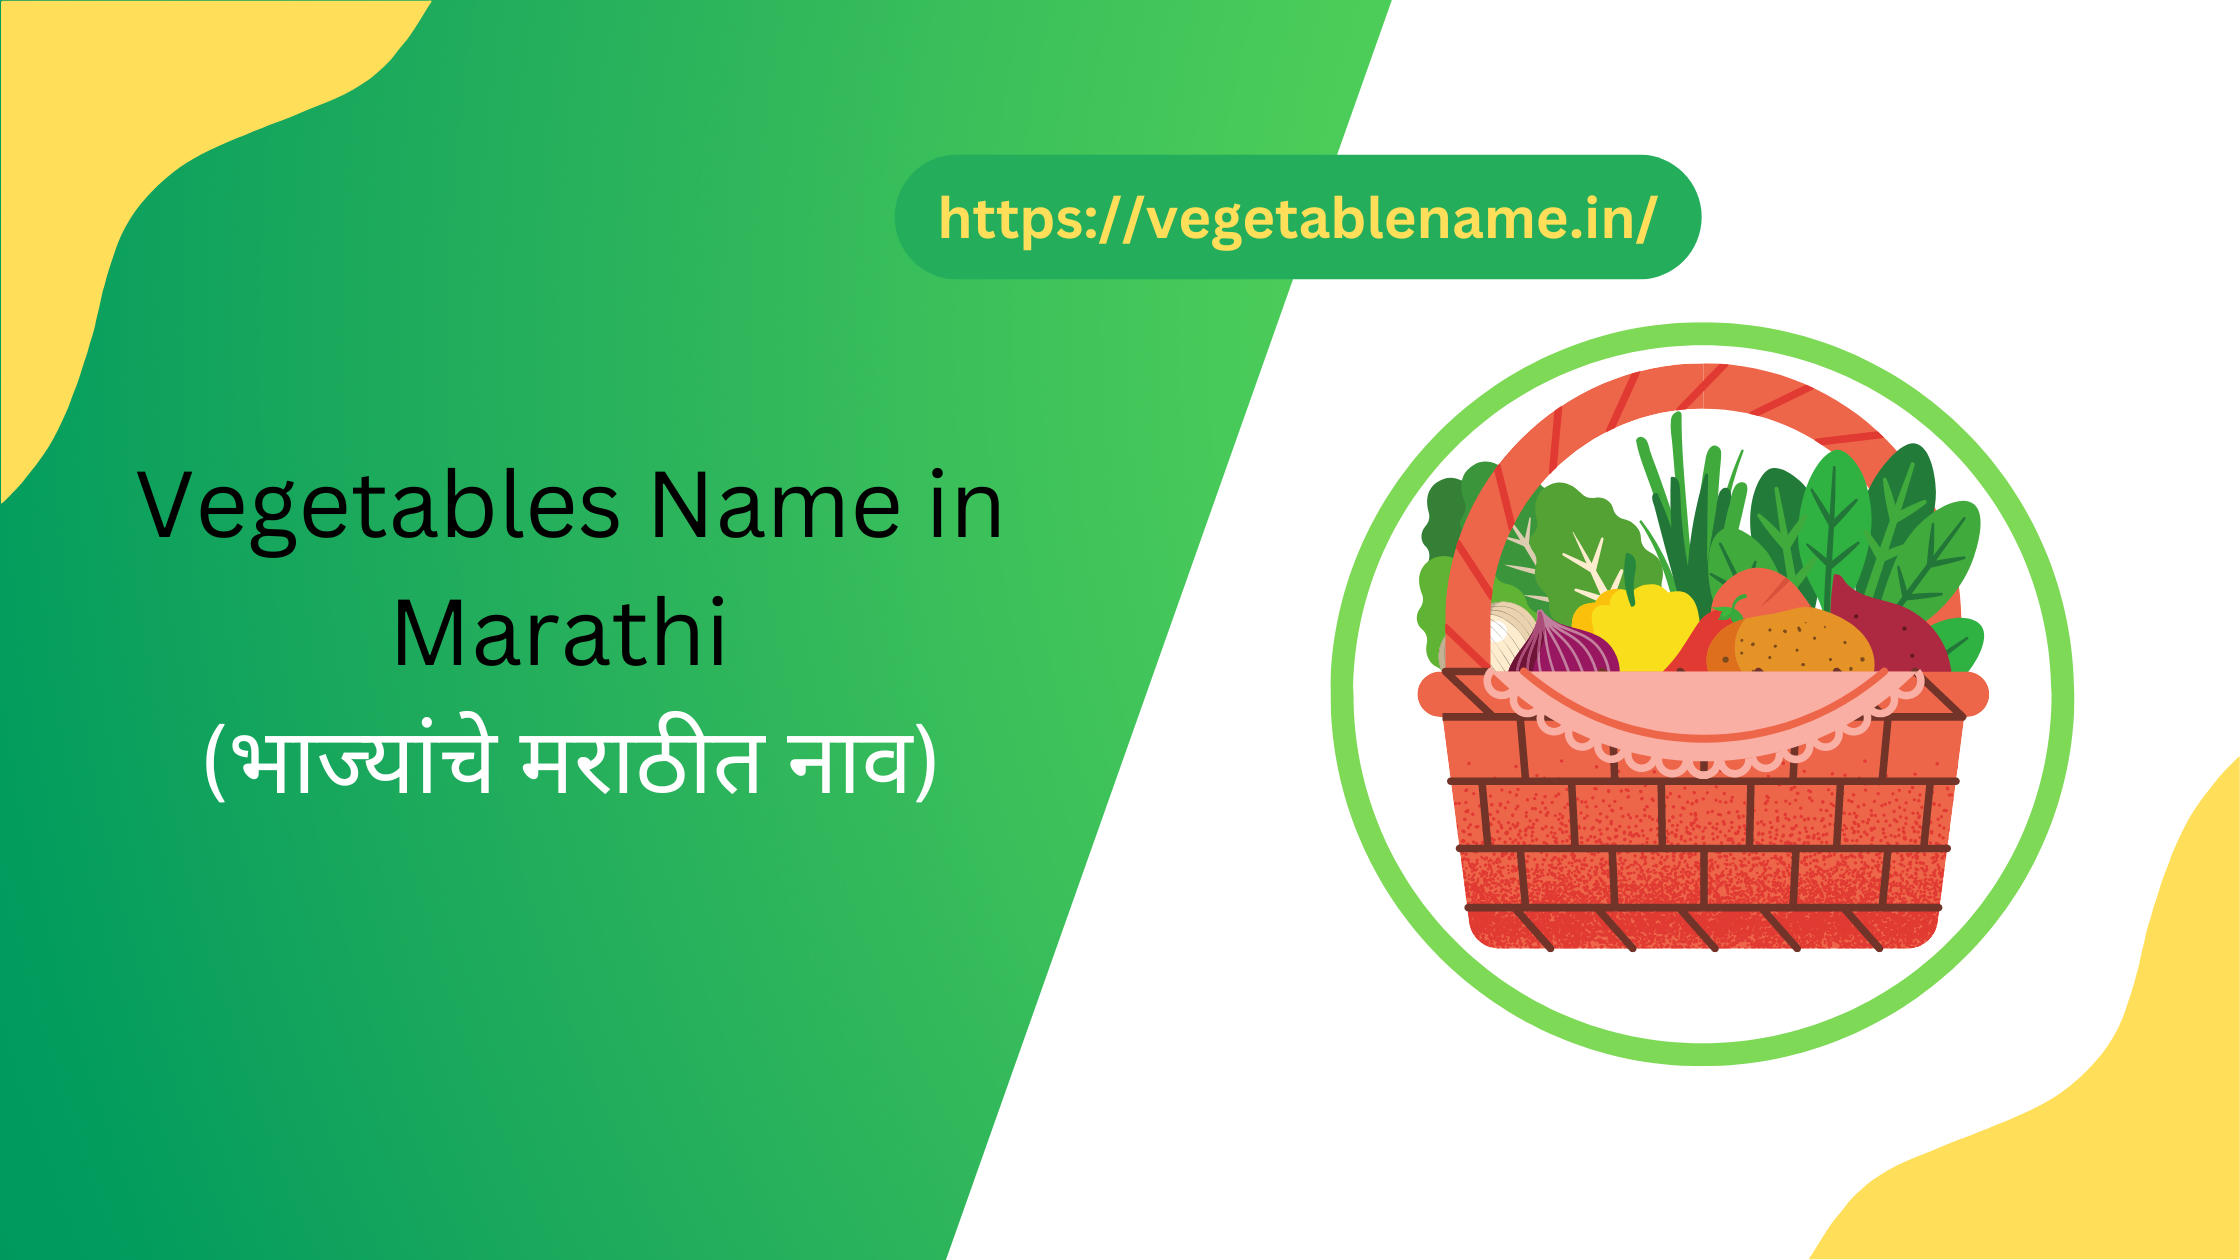 Vegetables Name in Marathi